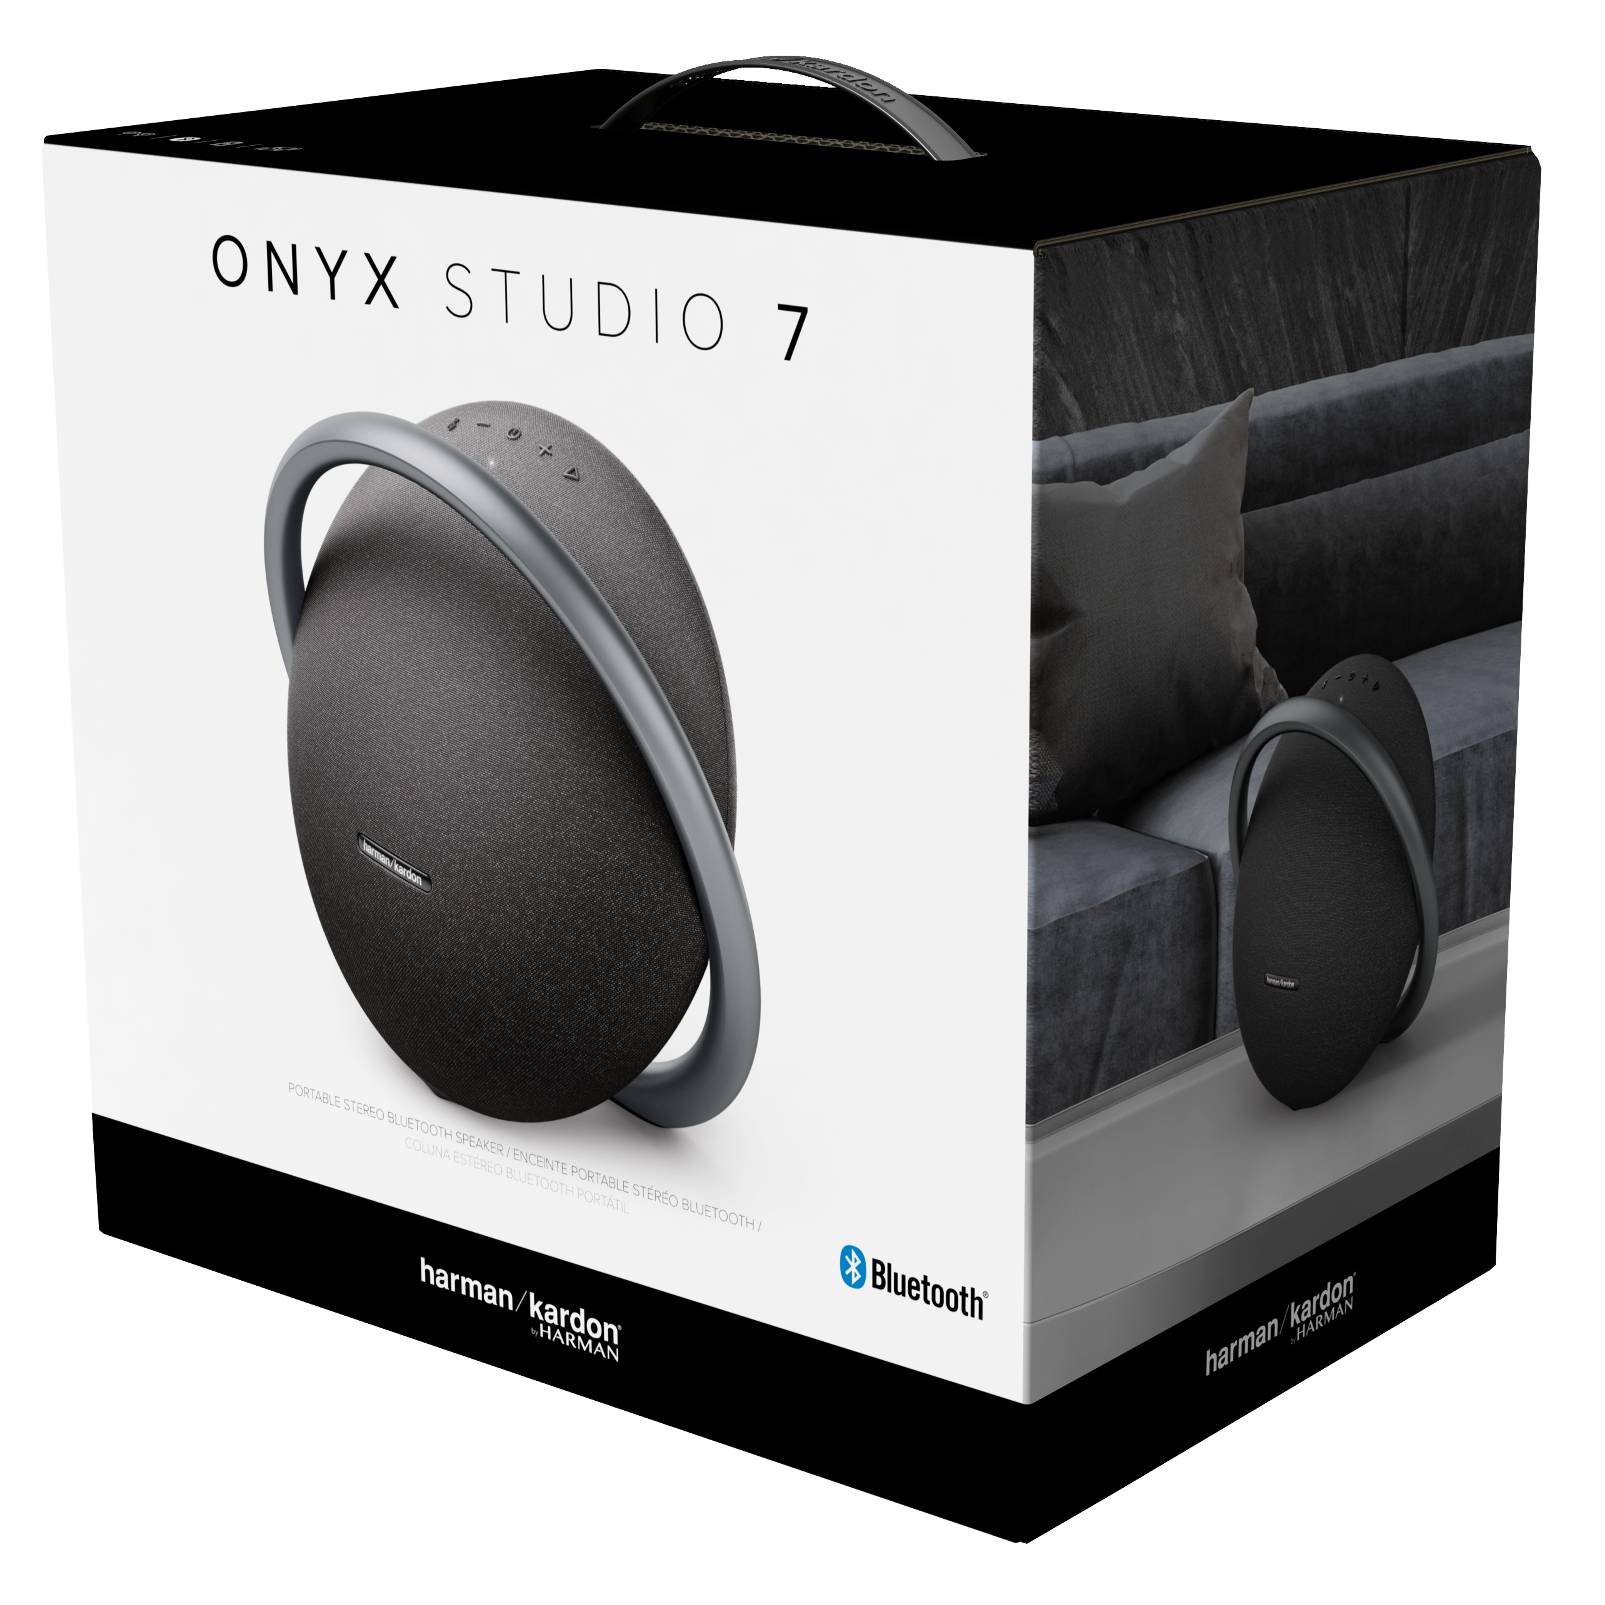 onyx studio 7 vs 4